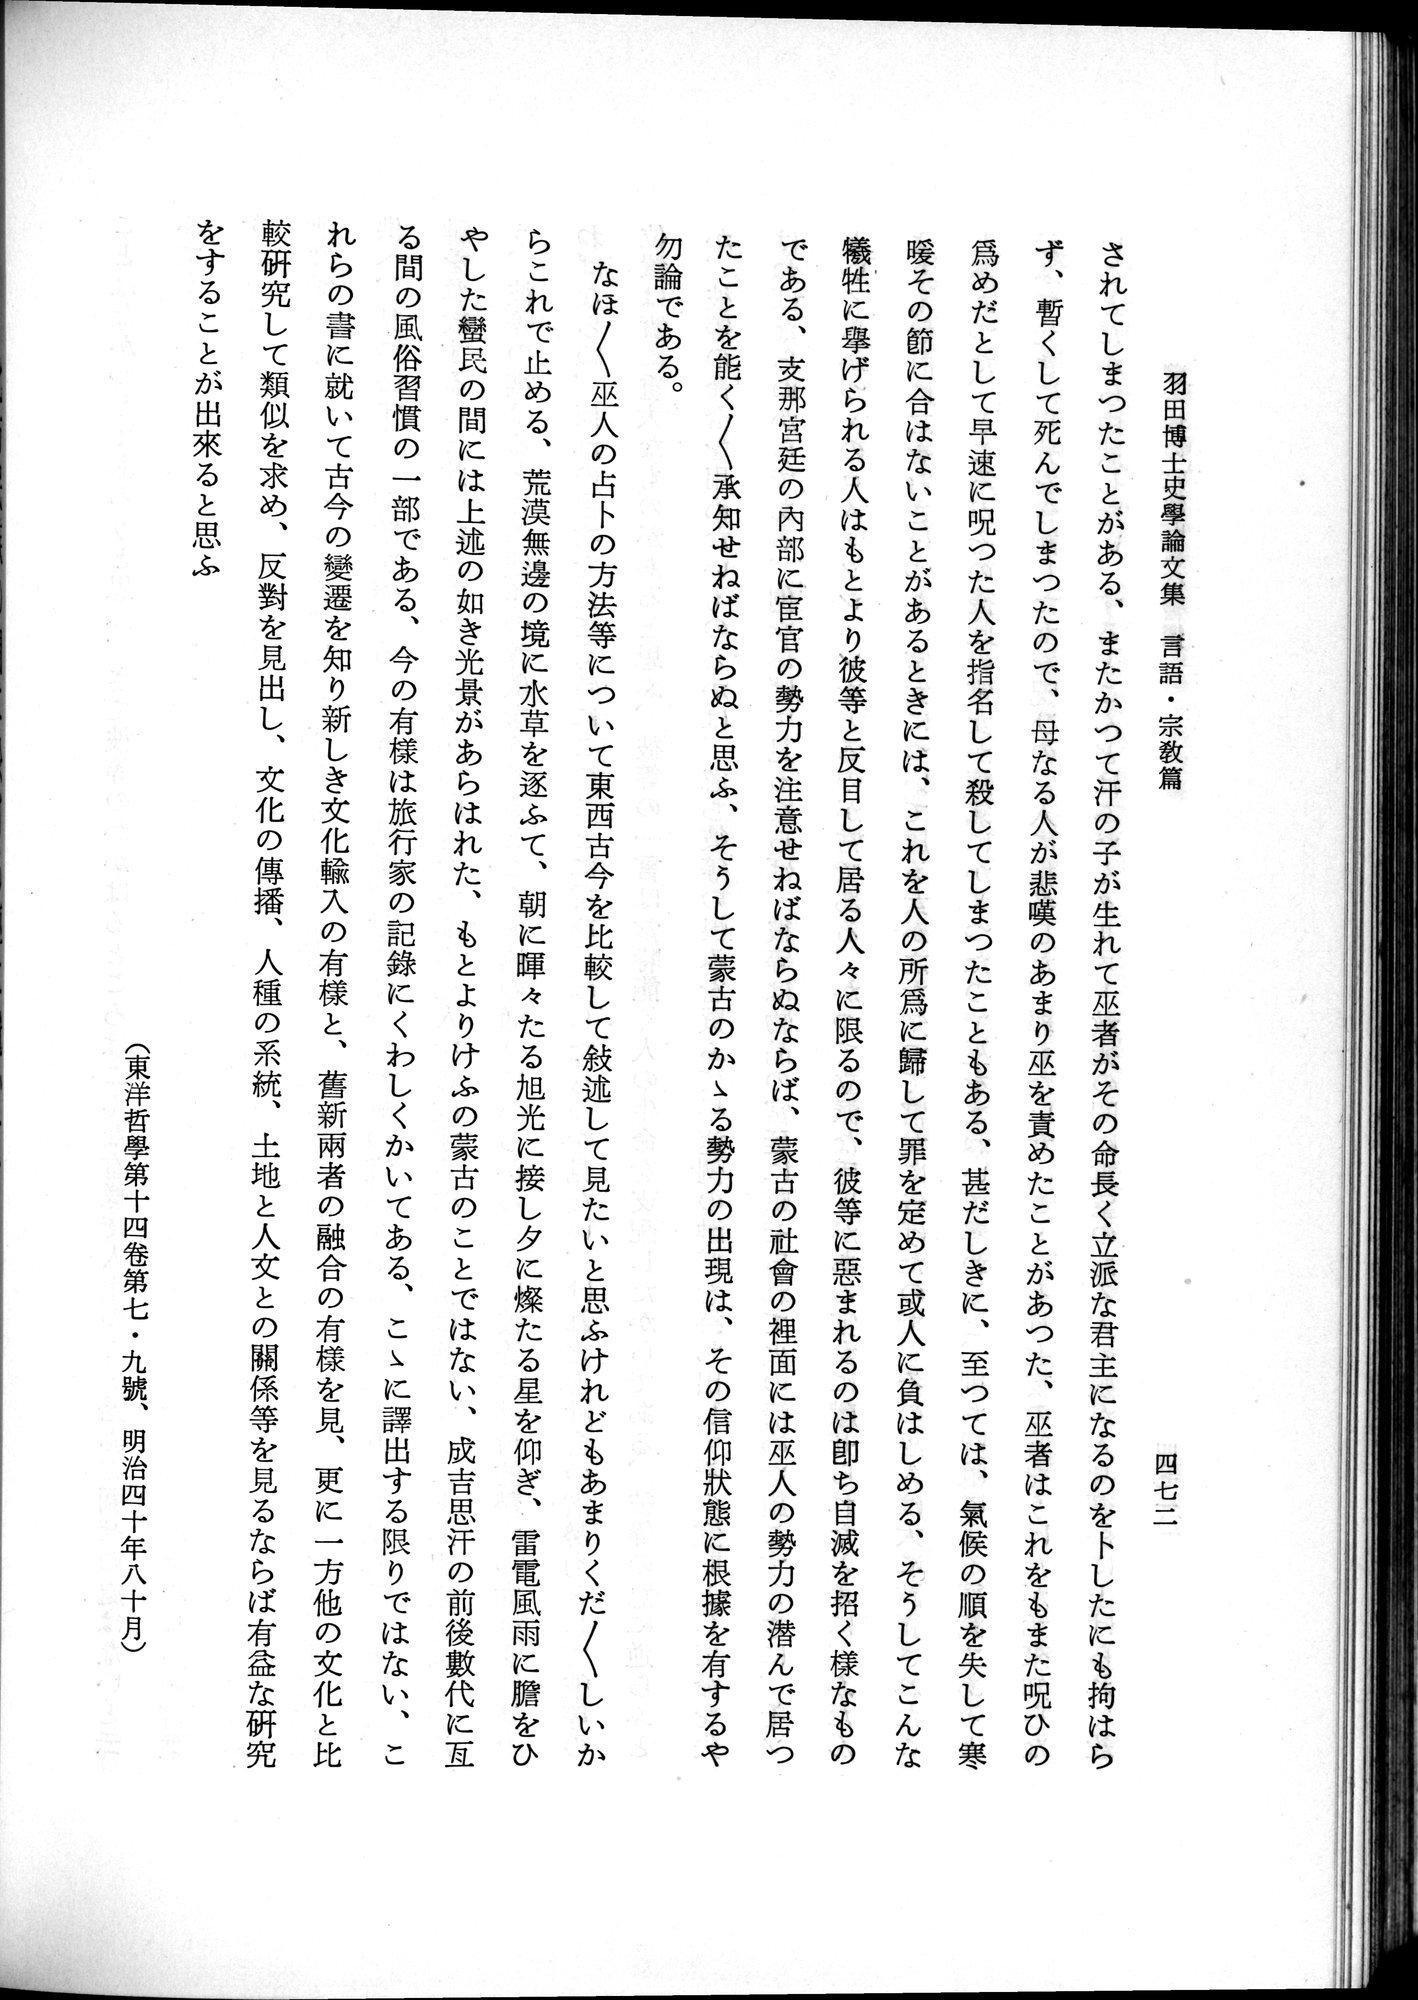 羽田博士史学論文集 : vol.2 / 534 ページ（白黒高解像度画像）